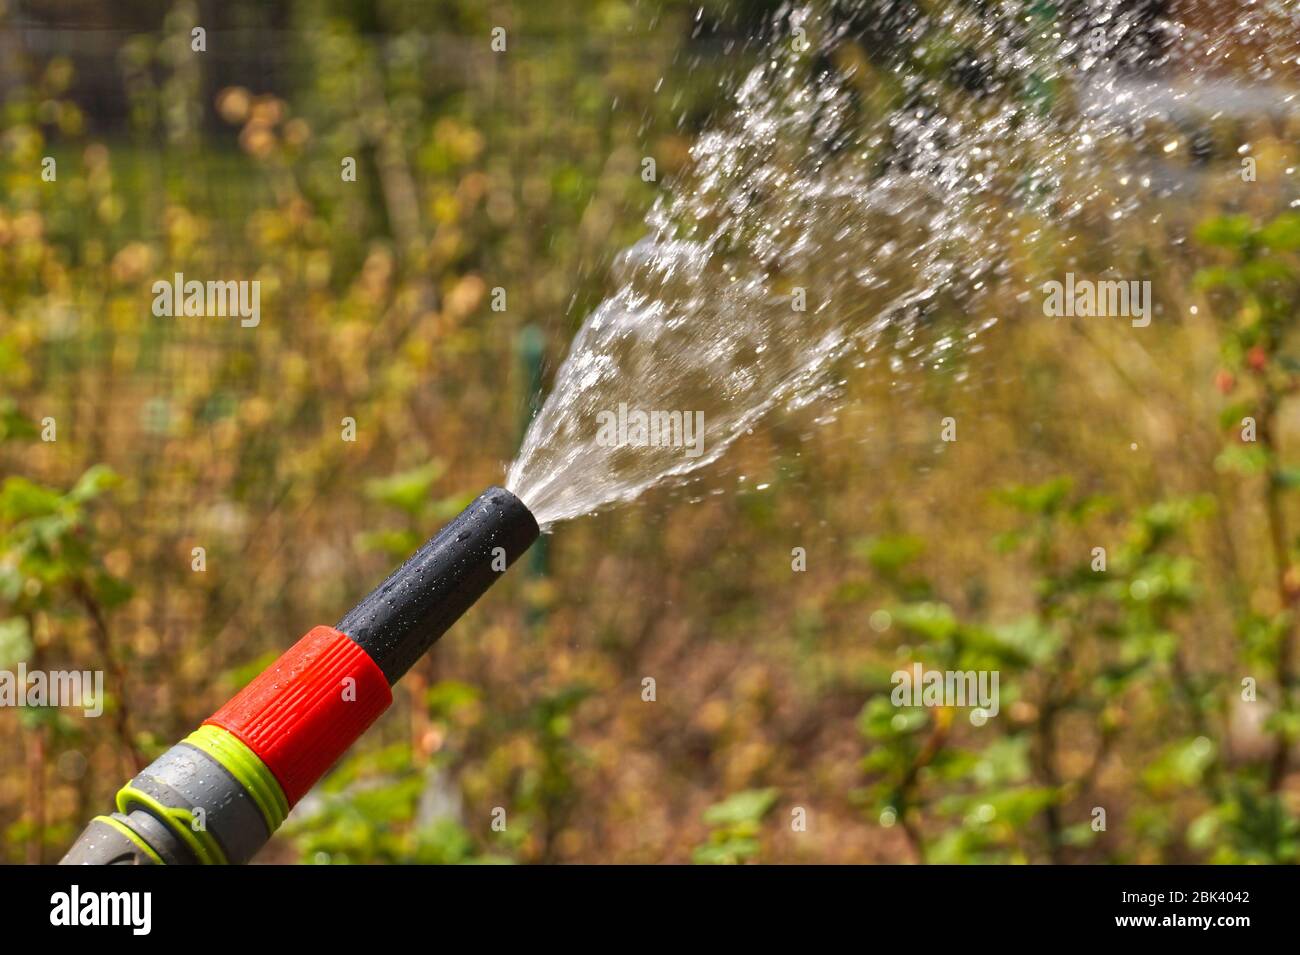 Ein Wasserstrahl aus einem Gartenschlauch. Bewässerung Pflanzen im Garten  Stockfotografie - Alamy